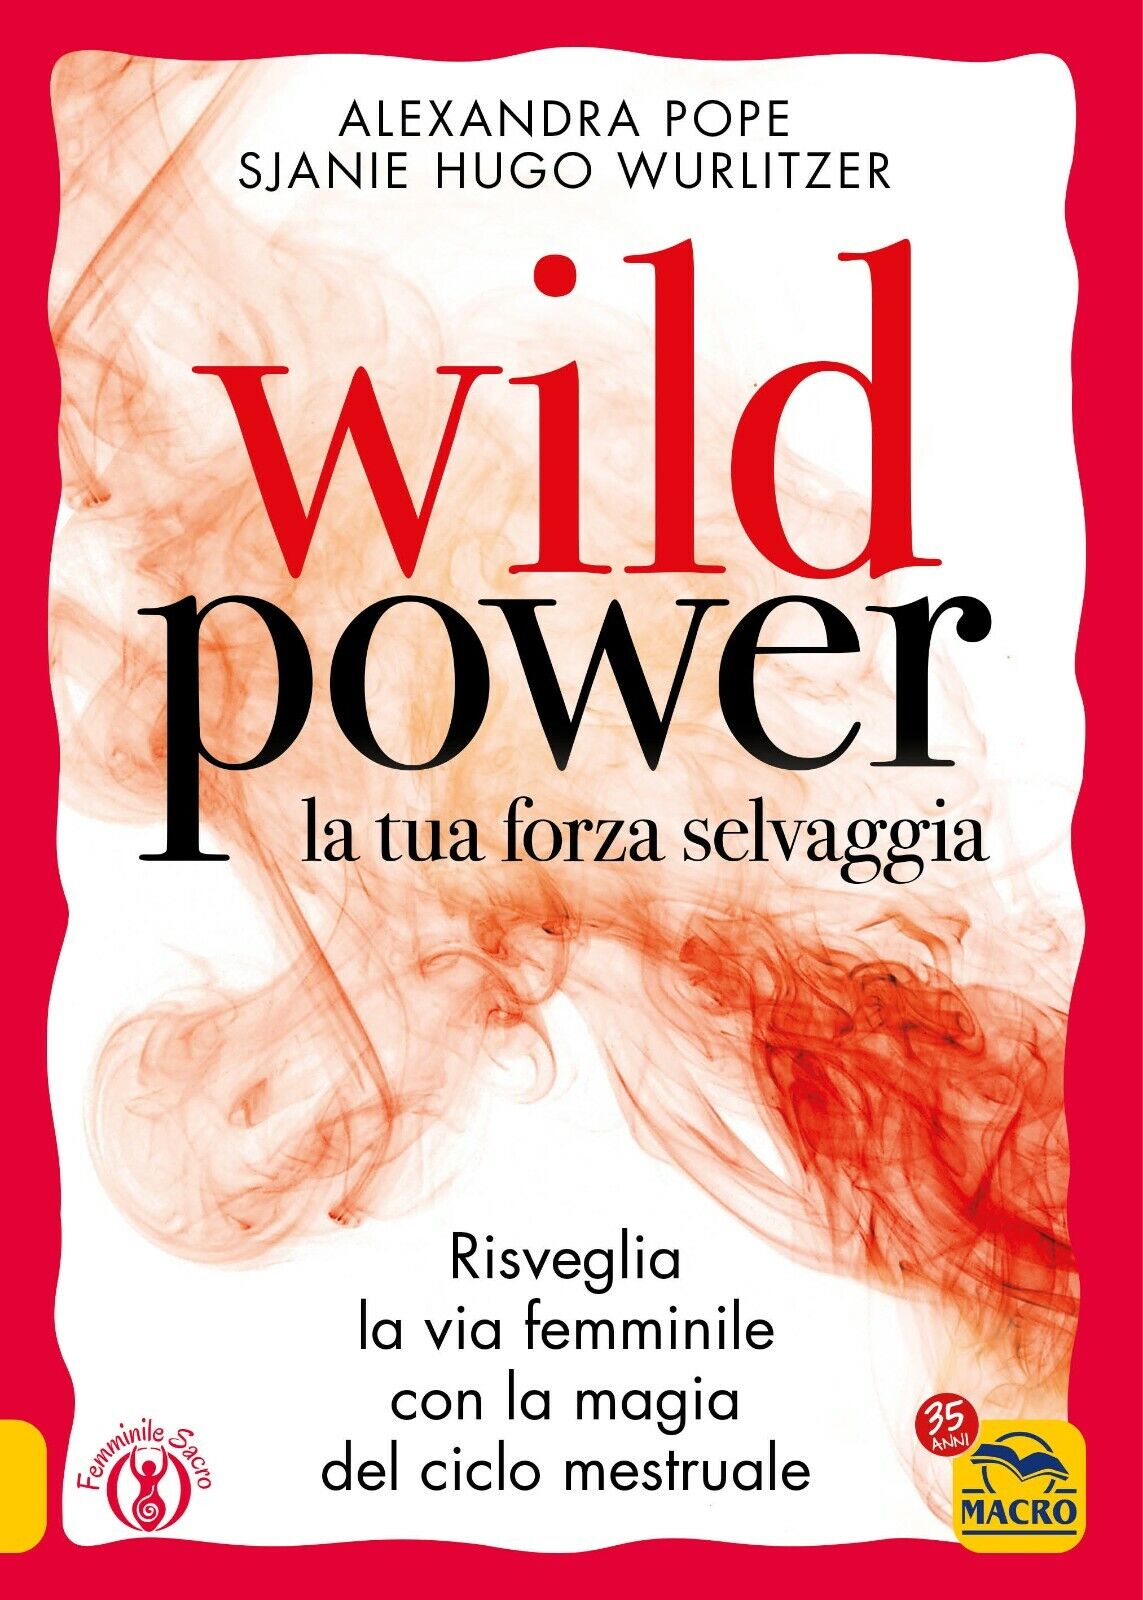 Wild power la tua forza selvaggia di Alexandra Pope, Sjanie Hugo Wurlitzer,  202